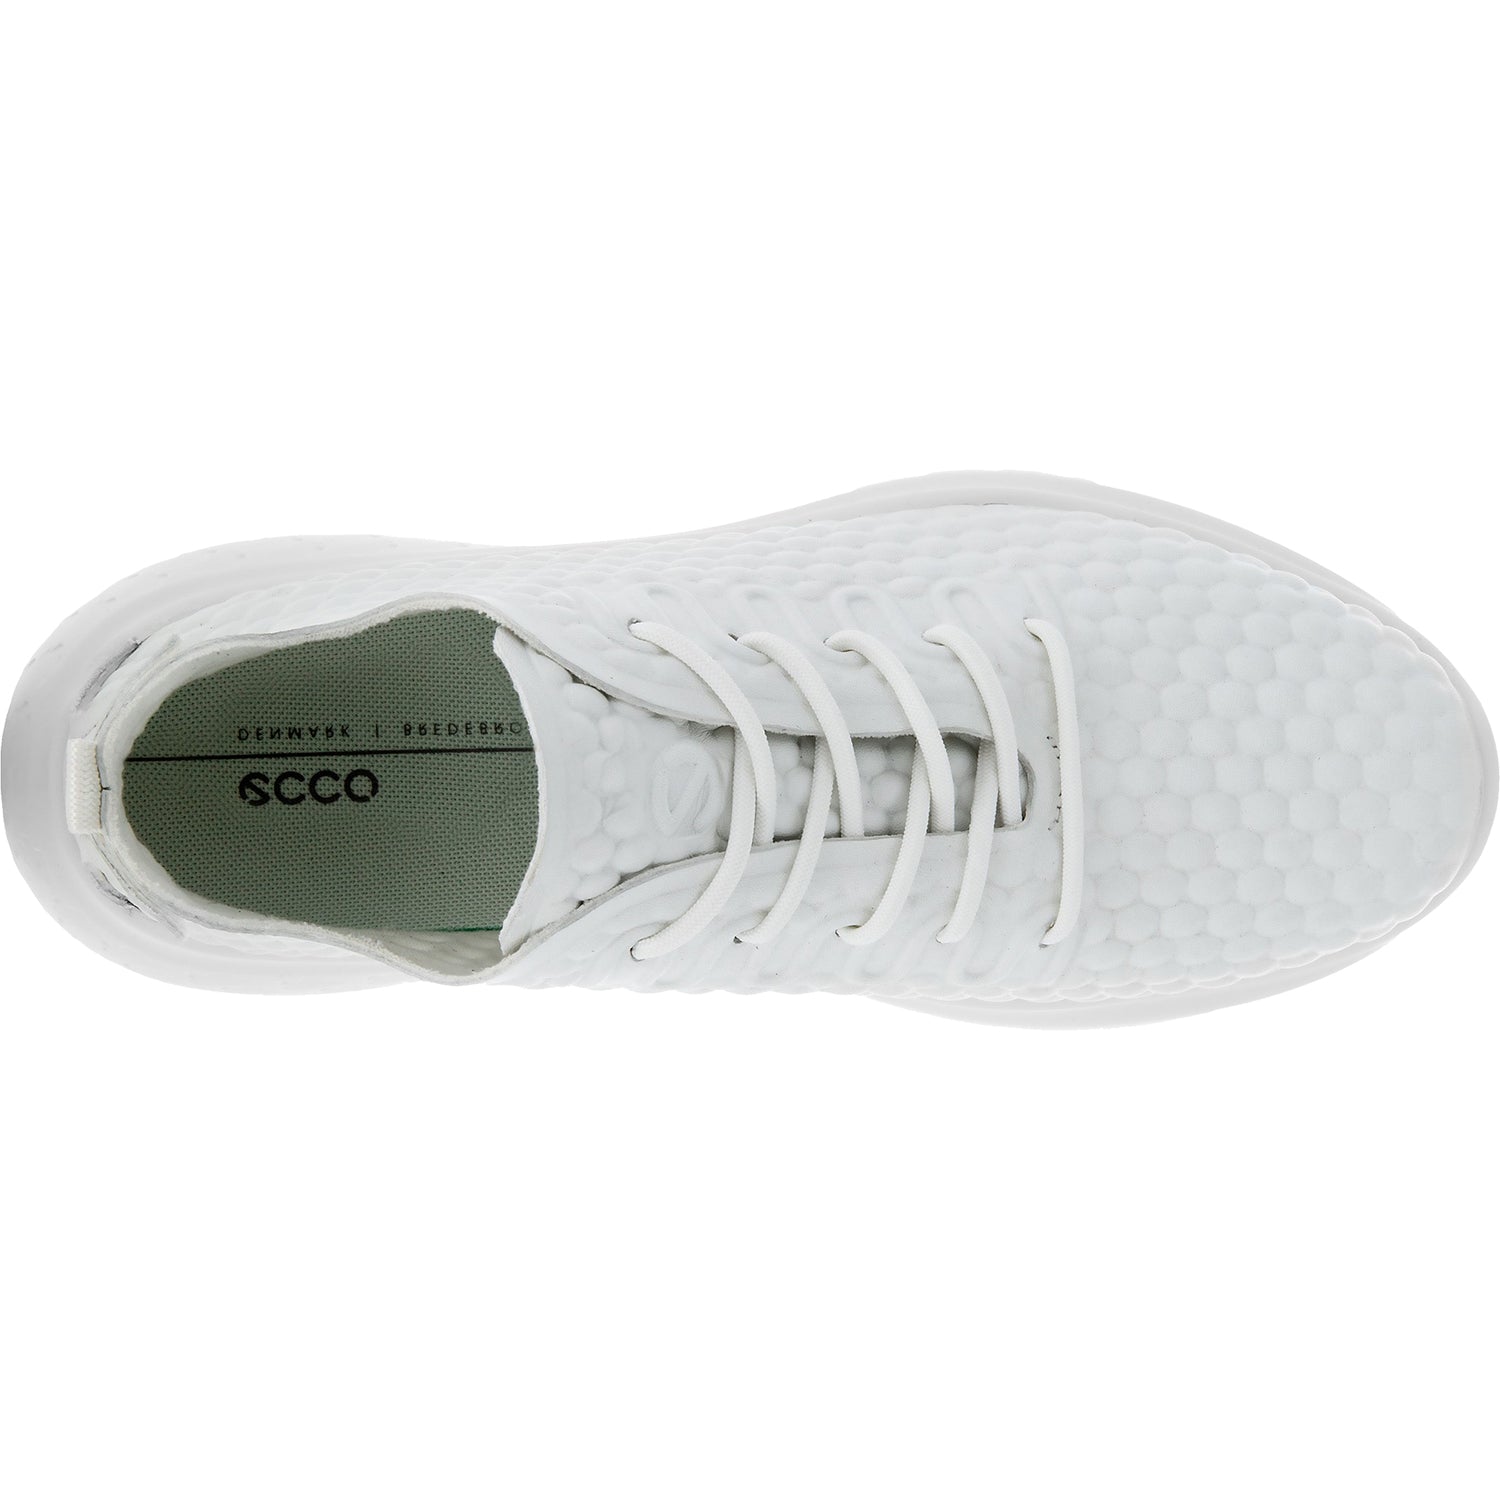 Ecco Therap Lace White | Women's Sneakers | Footwear etc.